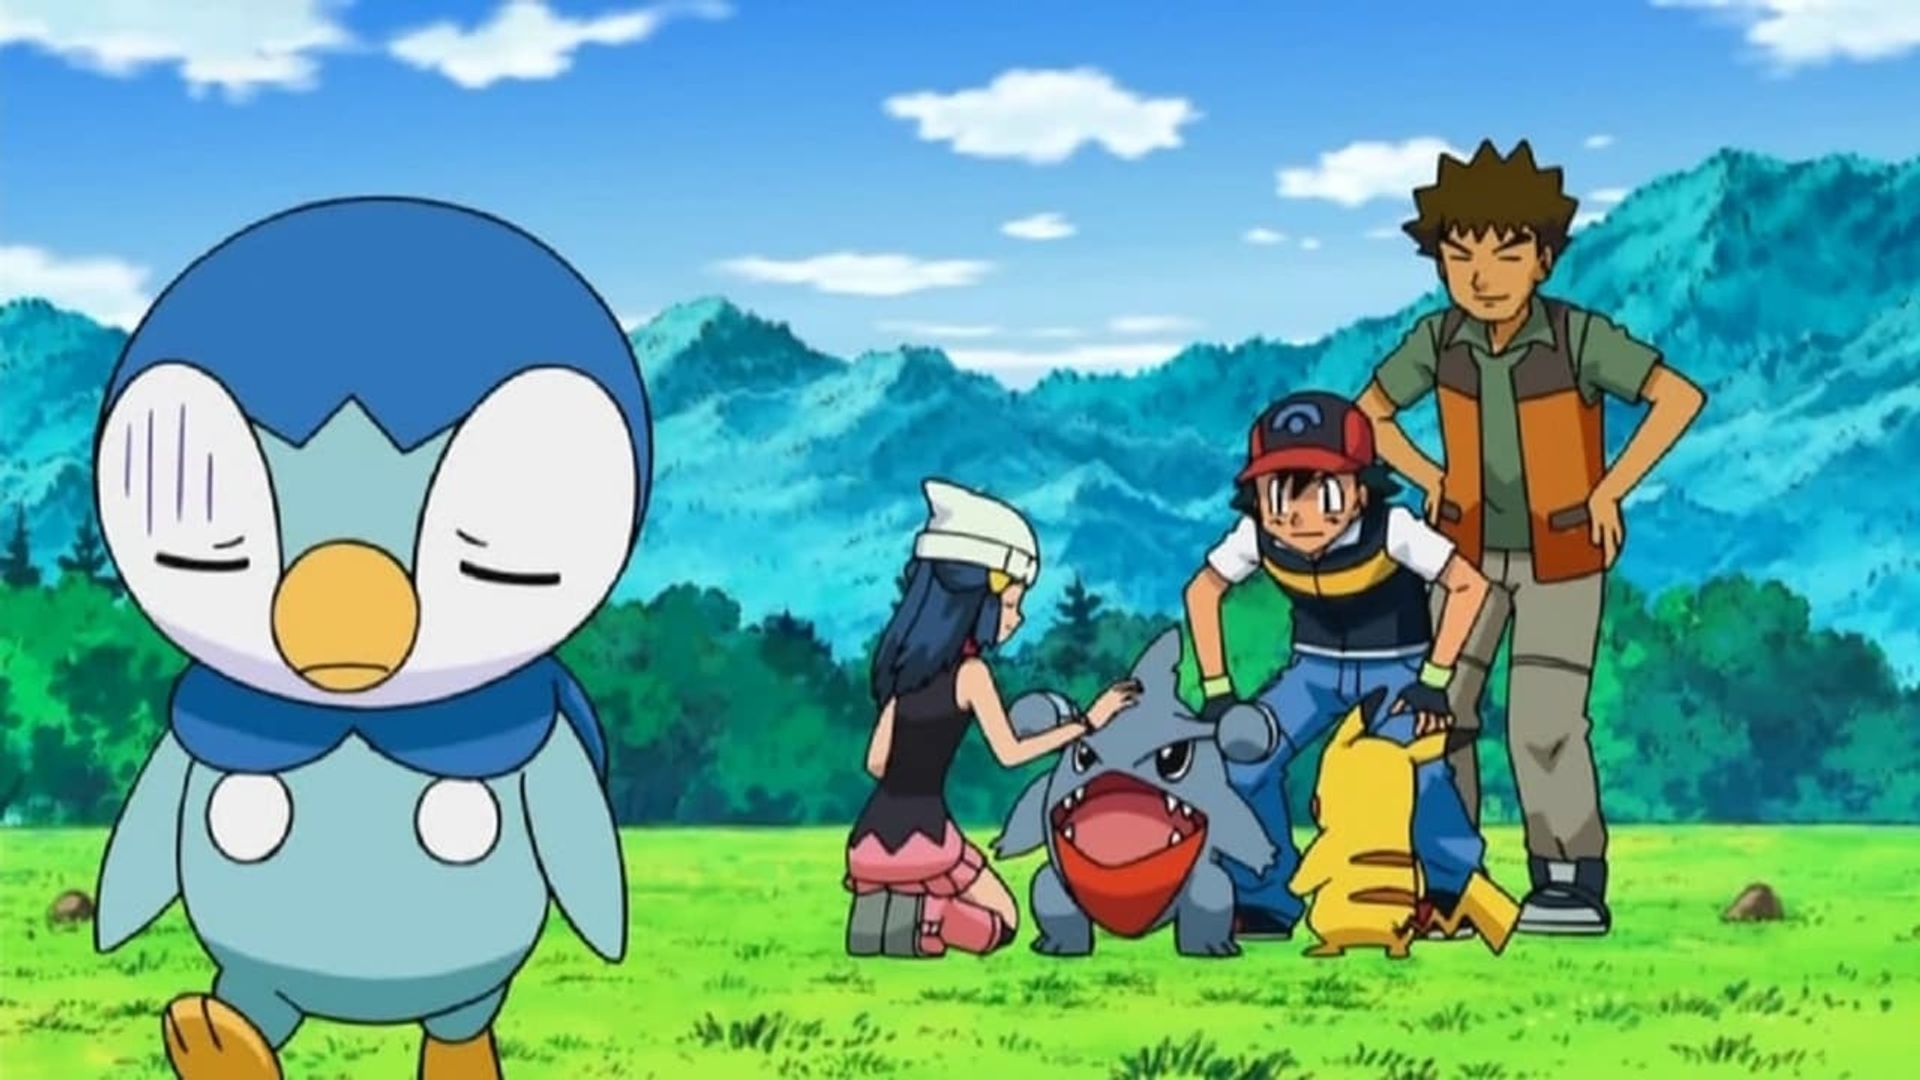 Pokémon background